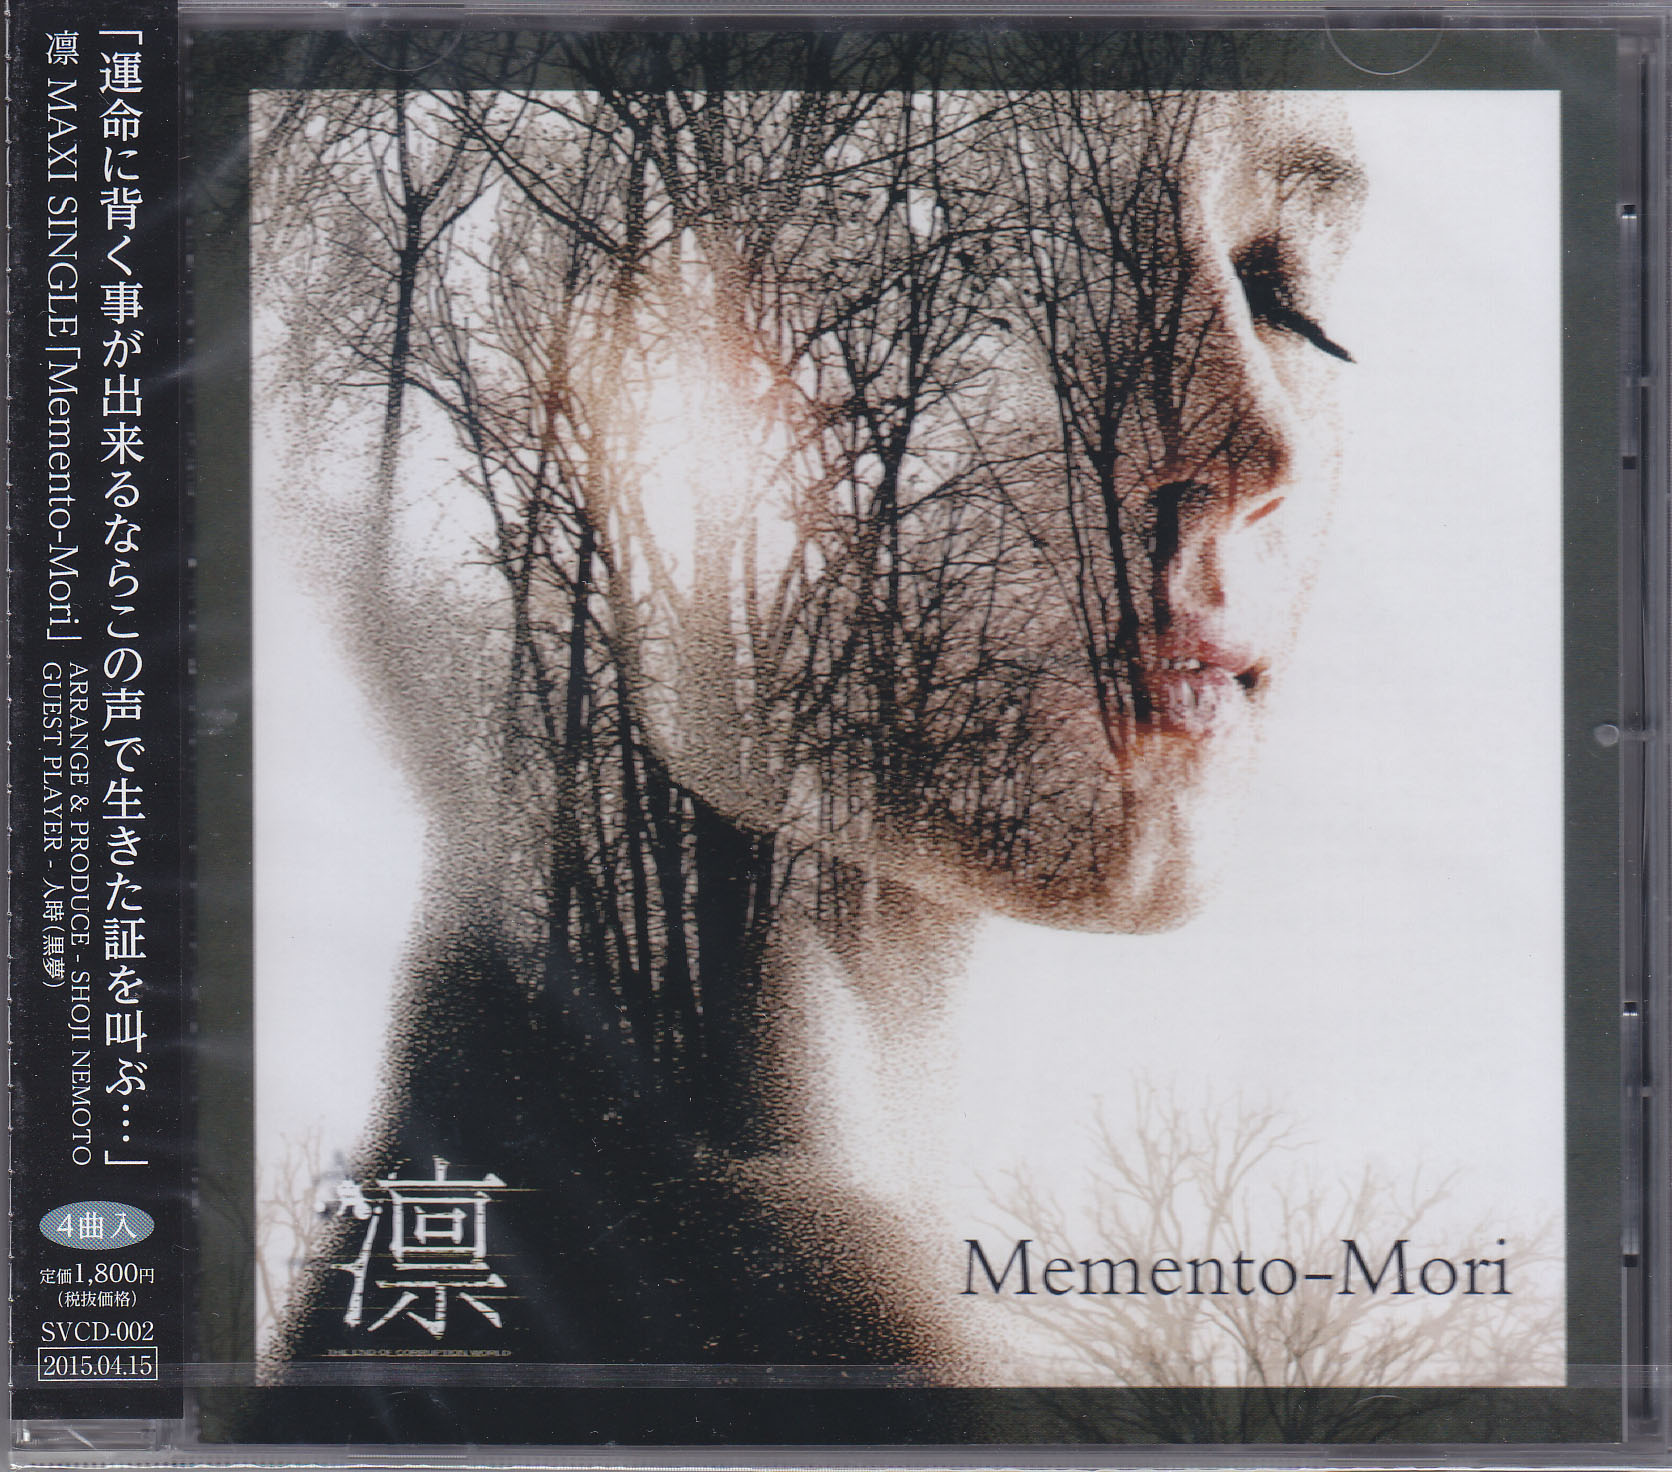 凛-the end of corruption world- ( リン )  の CD Memento-Mori